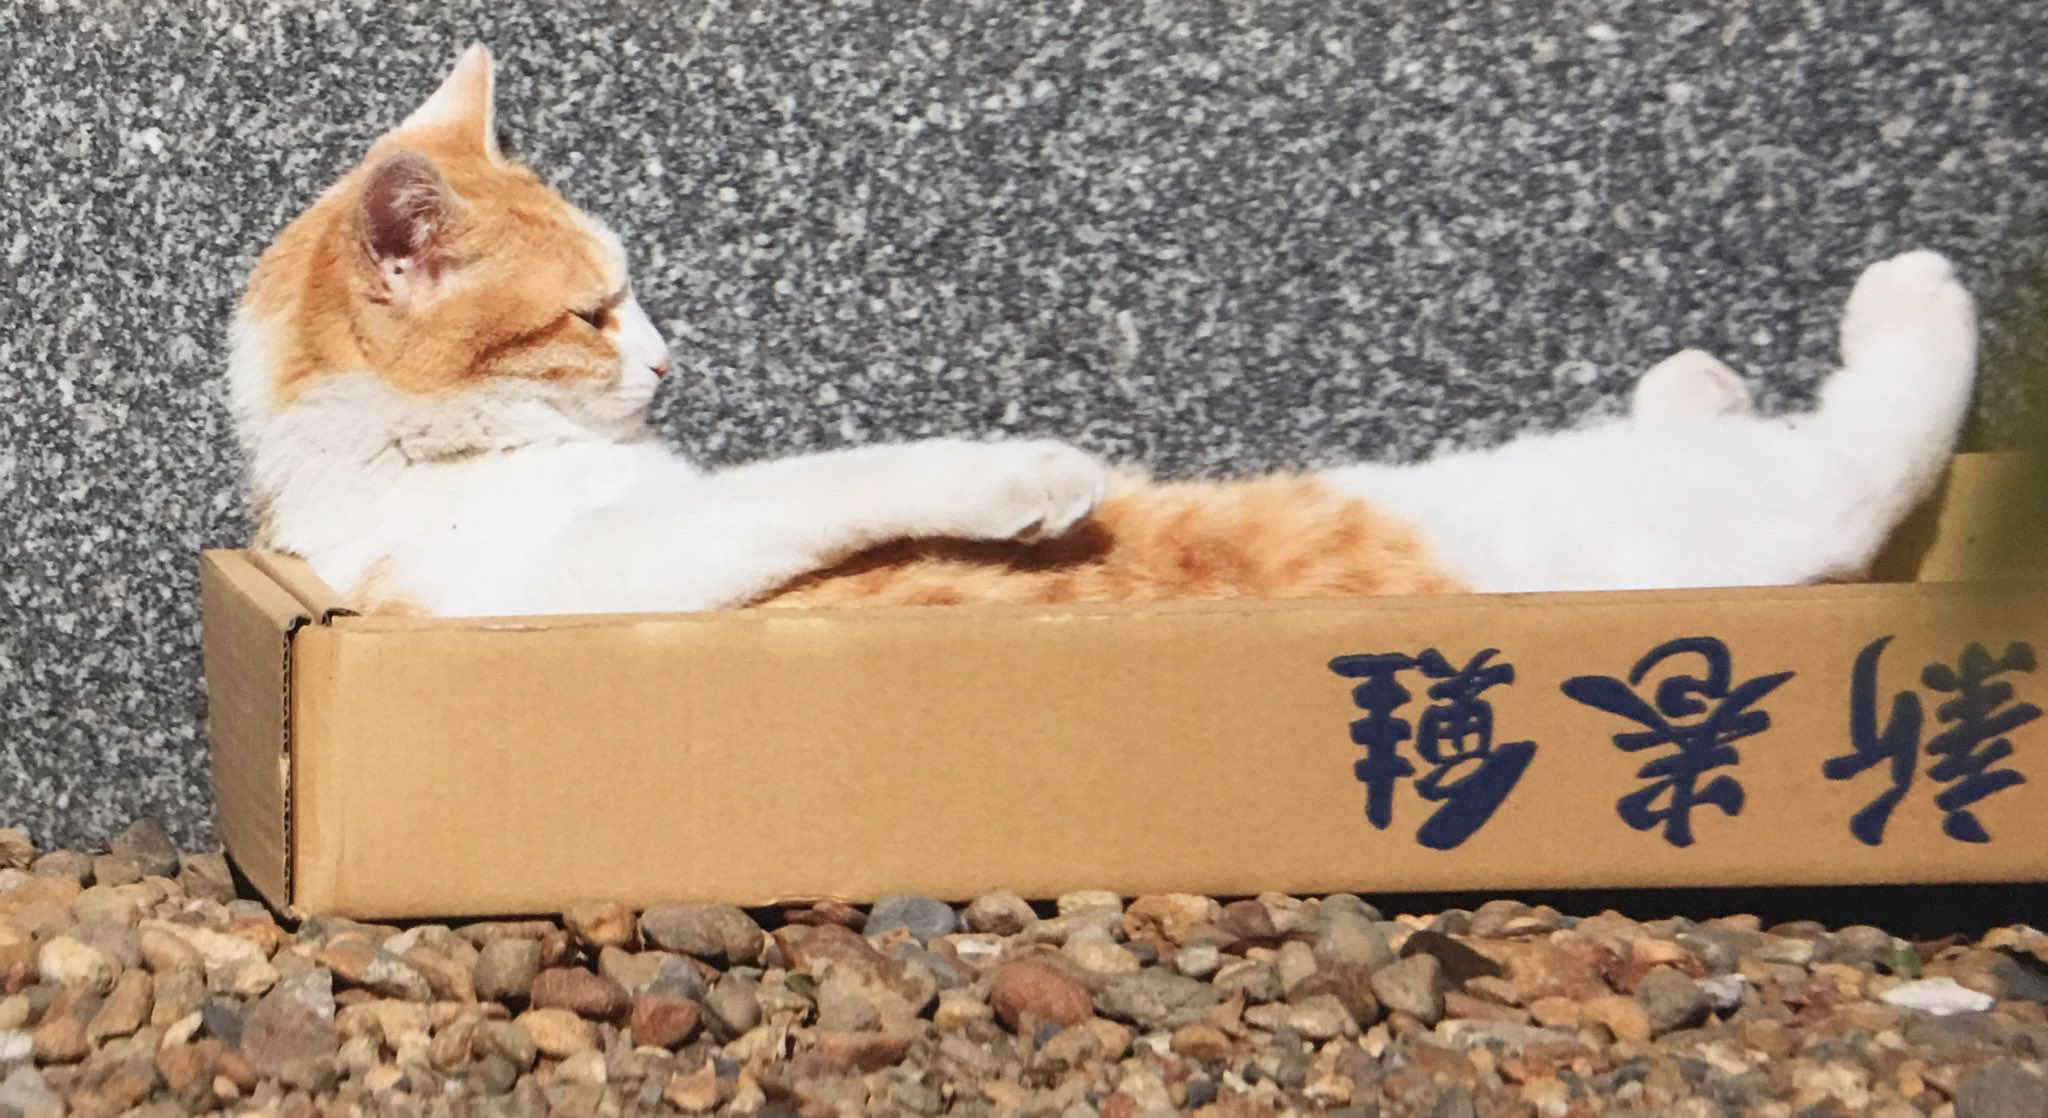 Một chú mèo tài năng đến từ Tokyo sẽ khiến bạn phải ngạc nhiên với khả năng hát và chơi nhạc cụ của nó! Được biết đây là một chú mèo tấu hề nổi tiếng có tên là Mimi-chan, và video về nó đã thu hút hàng triệu lượt xem trên internet. Hãy xem hình ảnh để thưởng thức những phút giây thú vị cùng Mimi-chan!